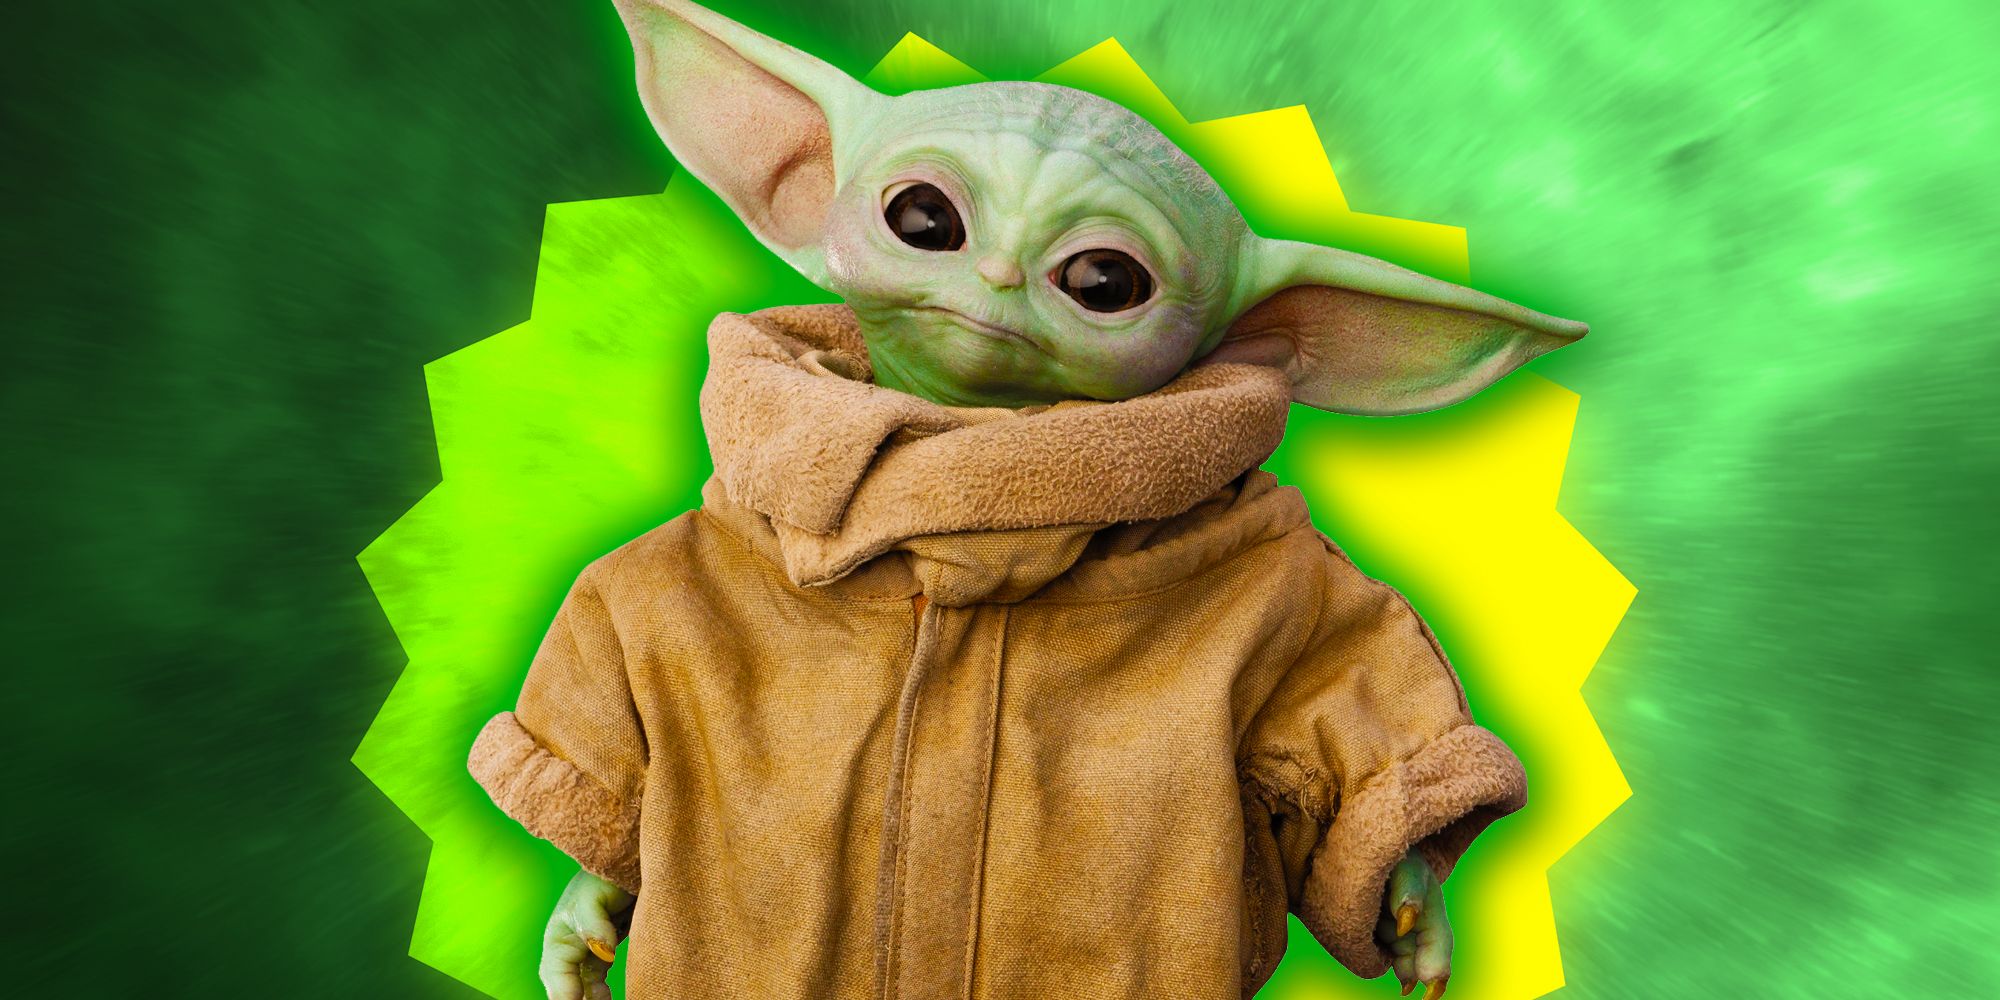 Star Wars Secretly Introduced Baby Yoda 22 Years Ago & Nobody